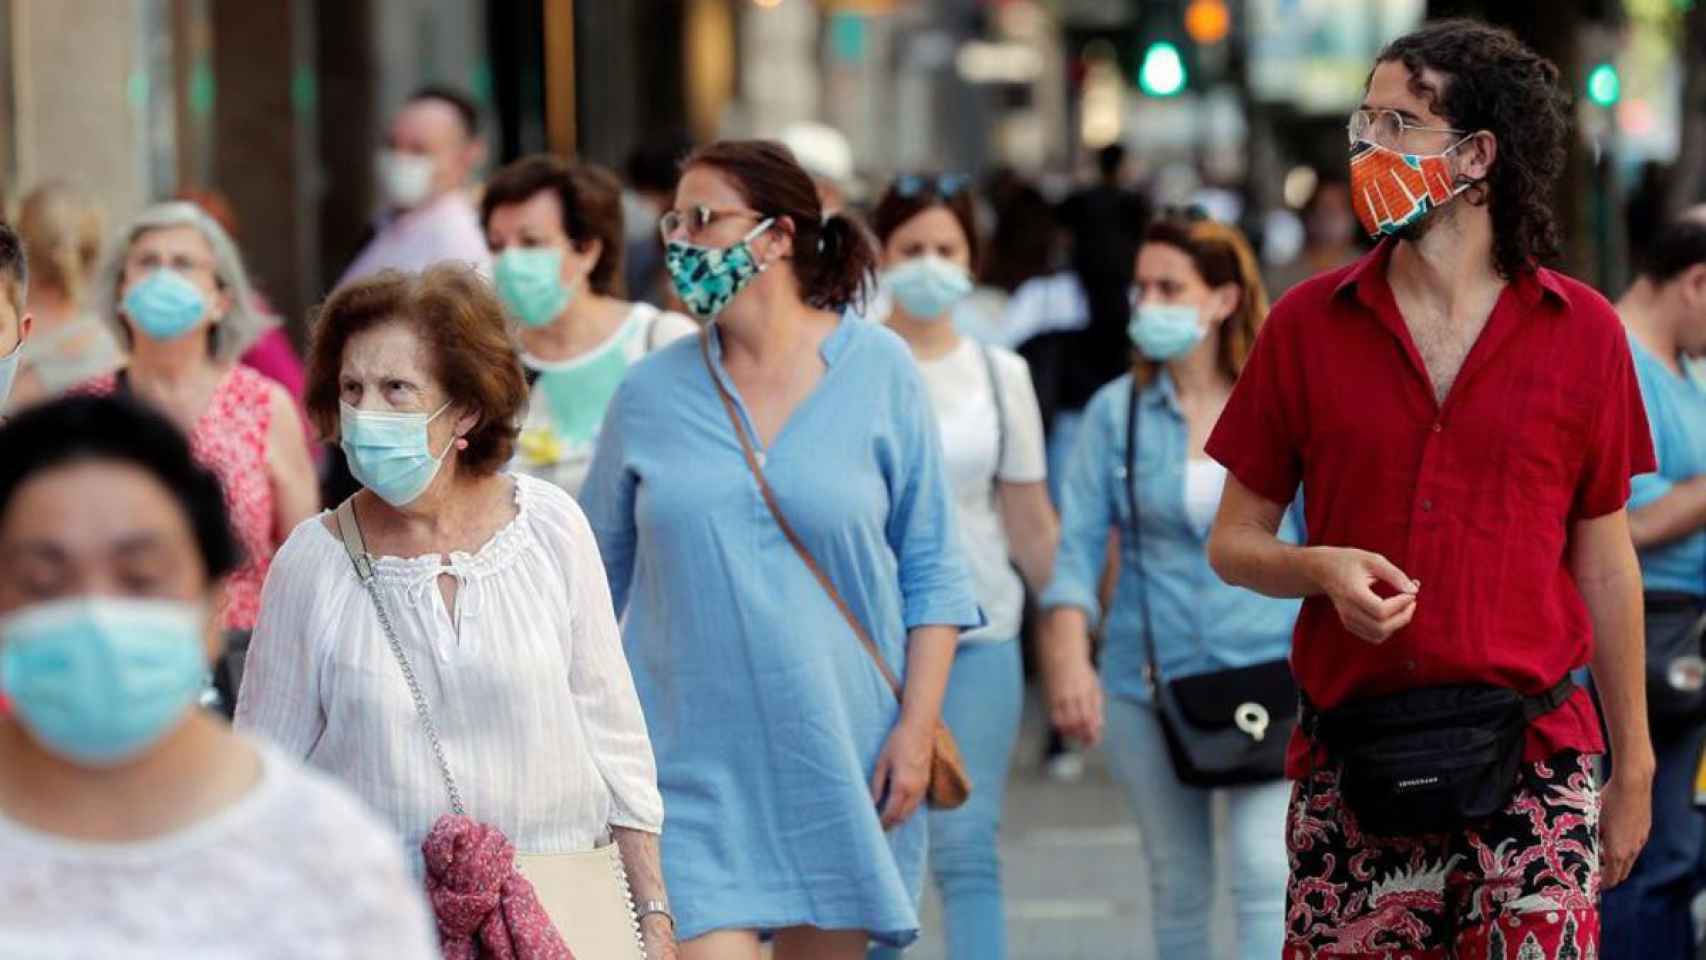 Con la ley antipandemia vasca, la utilizacin de mascarillas por la calle seguir siendo obligatoria para protegerse de la Covid-19. /EFE